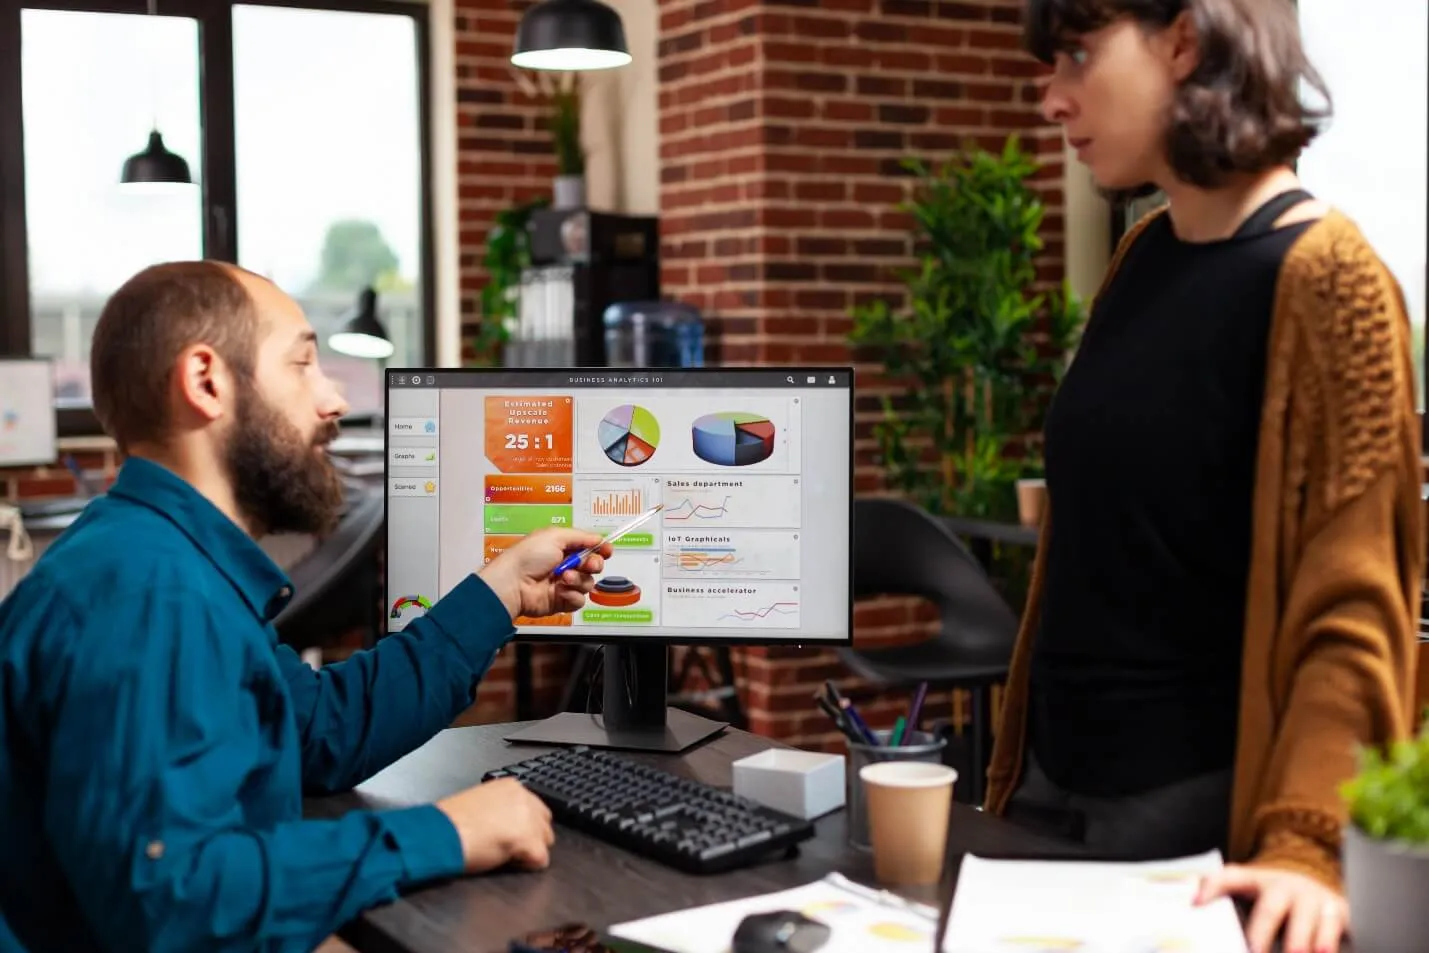 Homem branco e mulher branca conversando sobre gráficos e resultados mostrados na tela do computador